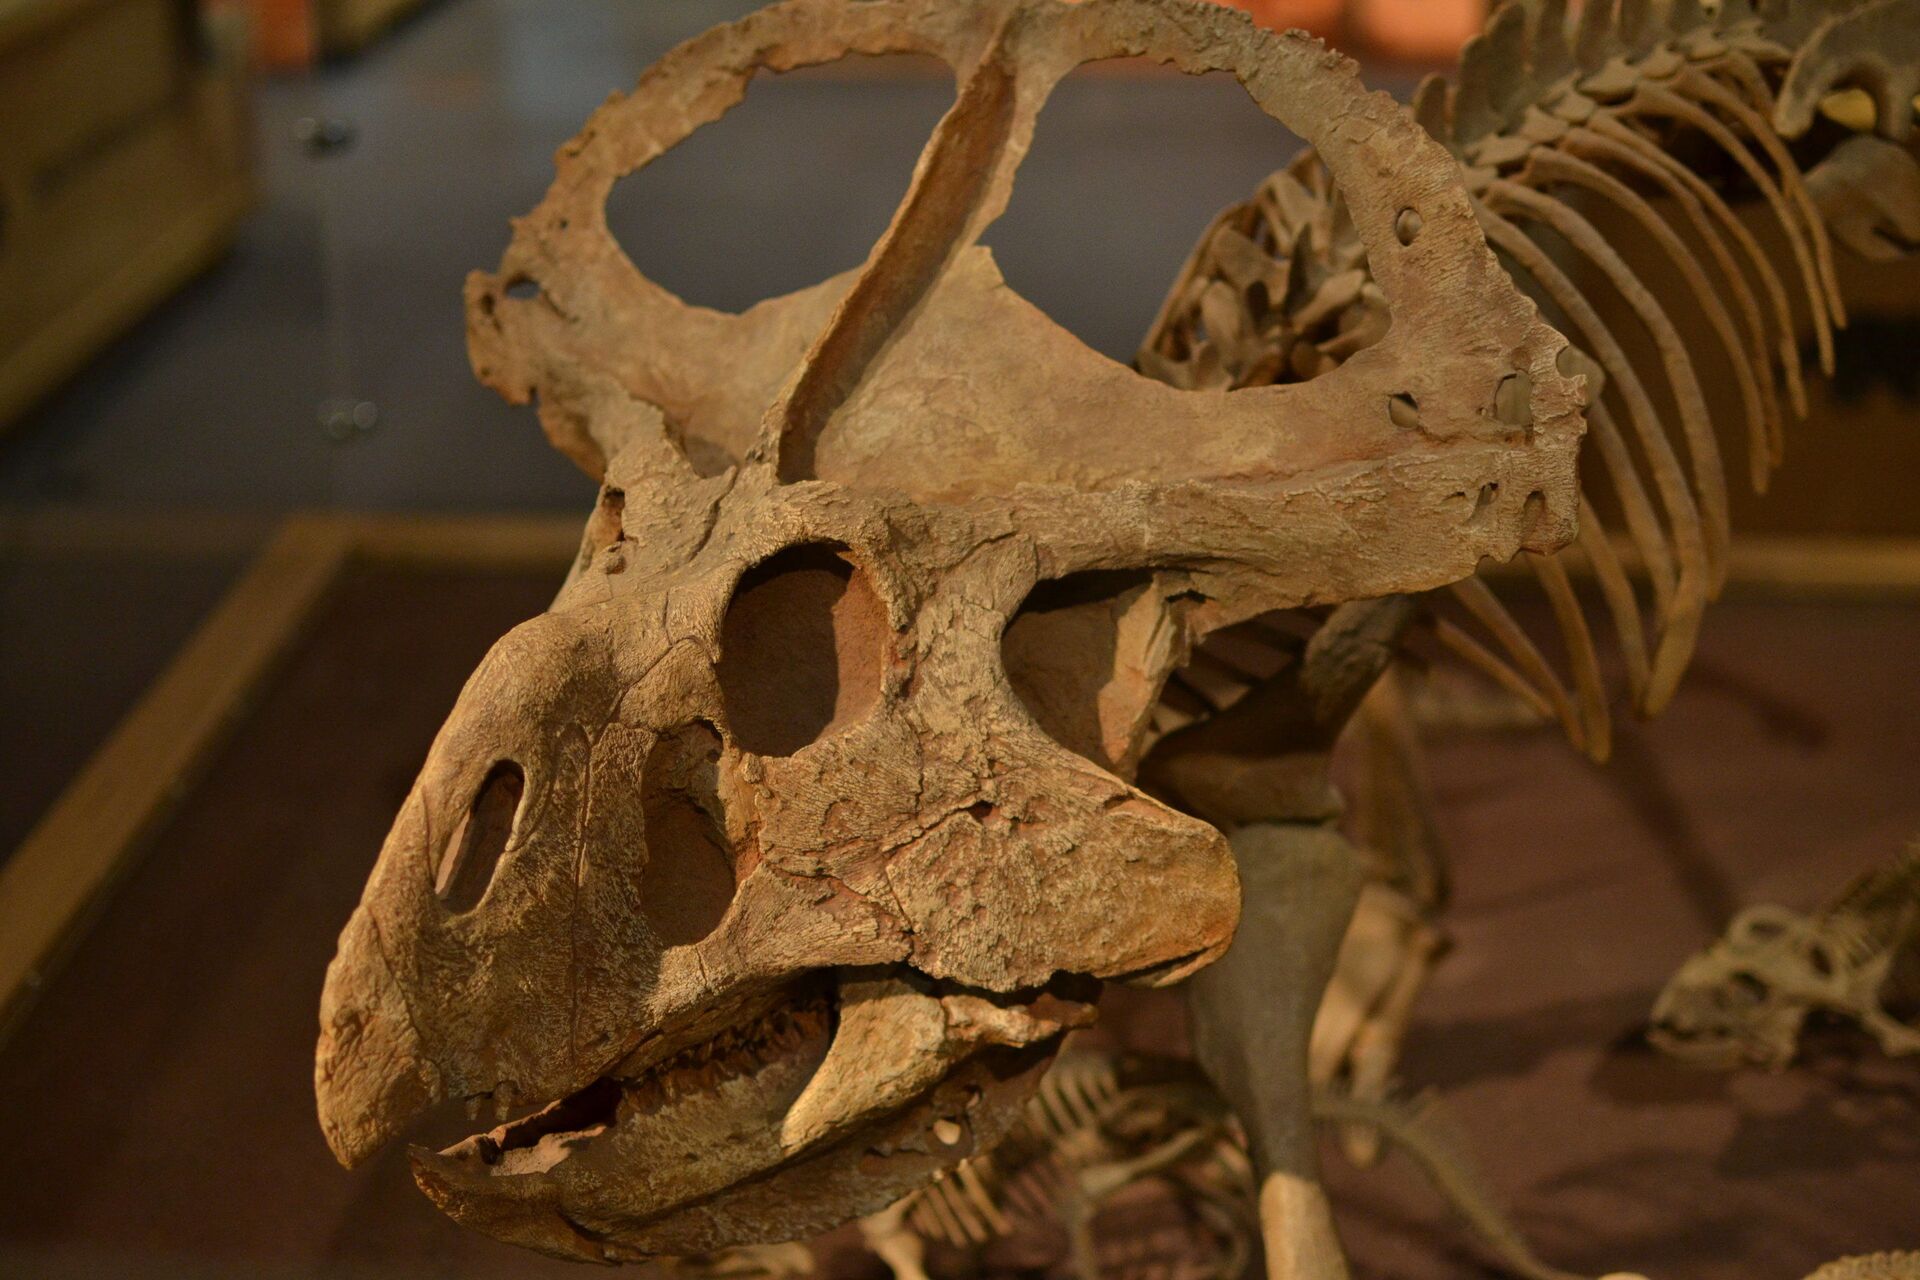 Flertar em vez de se defender: revelada função de 'babados' em crânio de dinossauro (FOTOS) - Sputnik Brasil, 1920, 03.02.2021